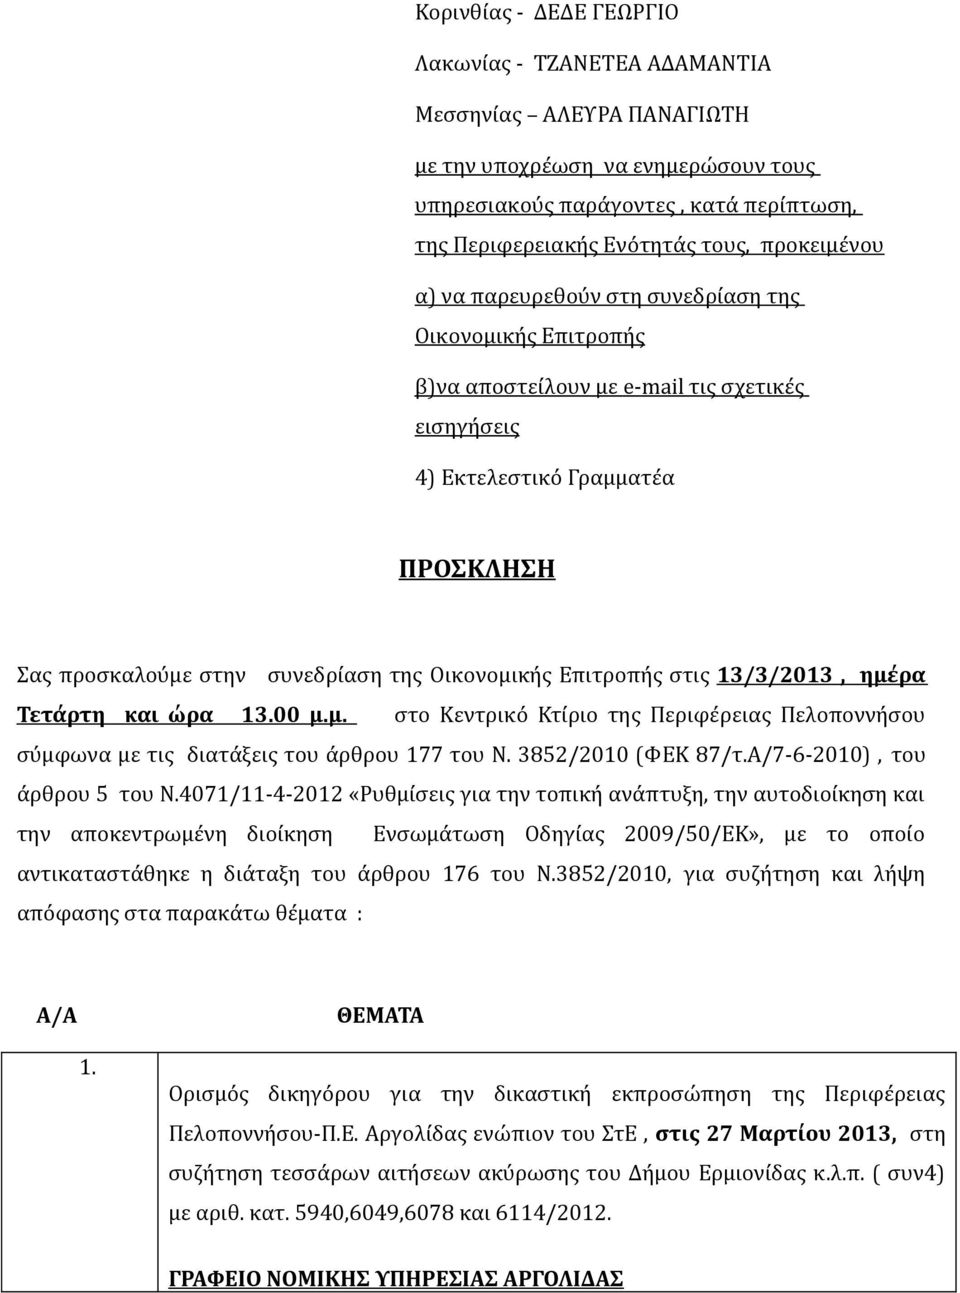 Οικονομικής Επιτροπής στις 13/3/2013, ημέρα Τετάρτη και ώρα 13.00 μ.μ. στο Κεντρικό Κτίριο της Περιφέρειας Πελοποννήσου σύμφωνα με τις διατάξεις του άρθρου 177 του Ν. 3852/2010 (ΦΕΚ 87/τ.